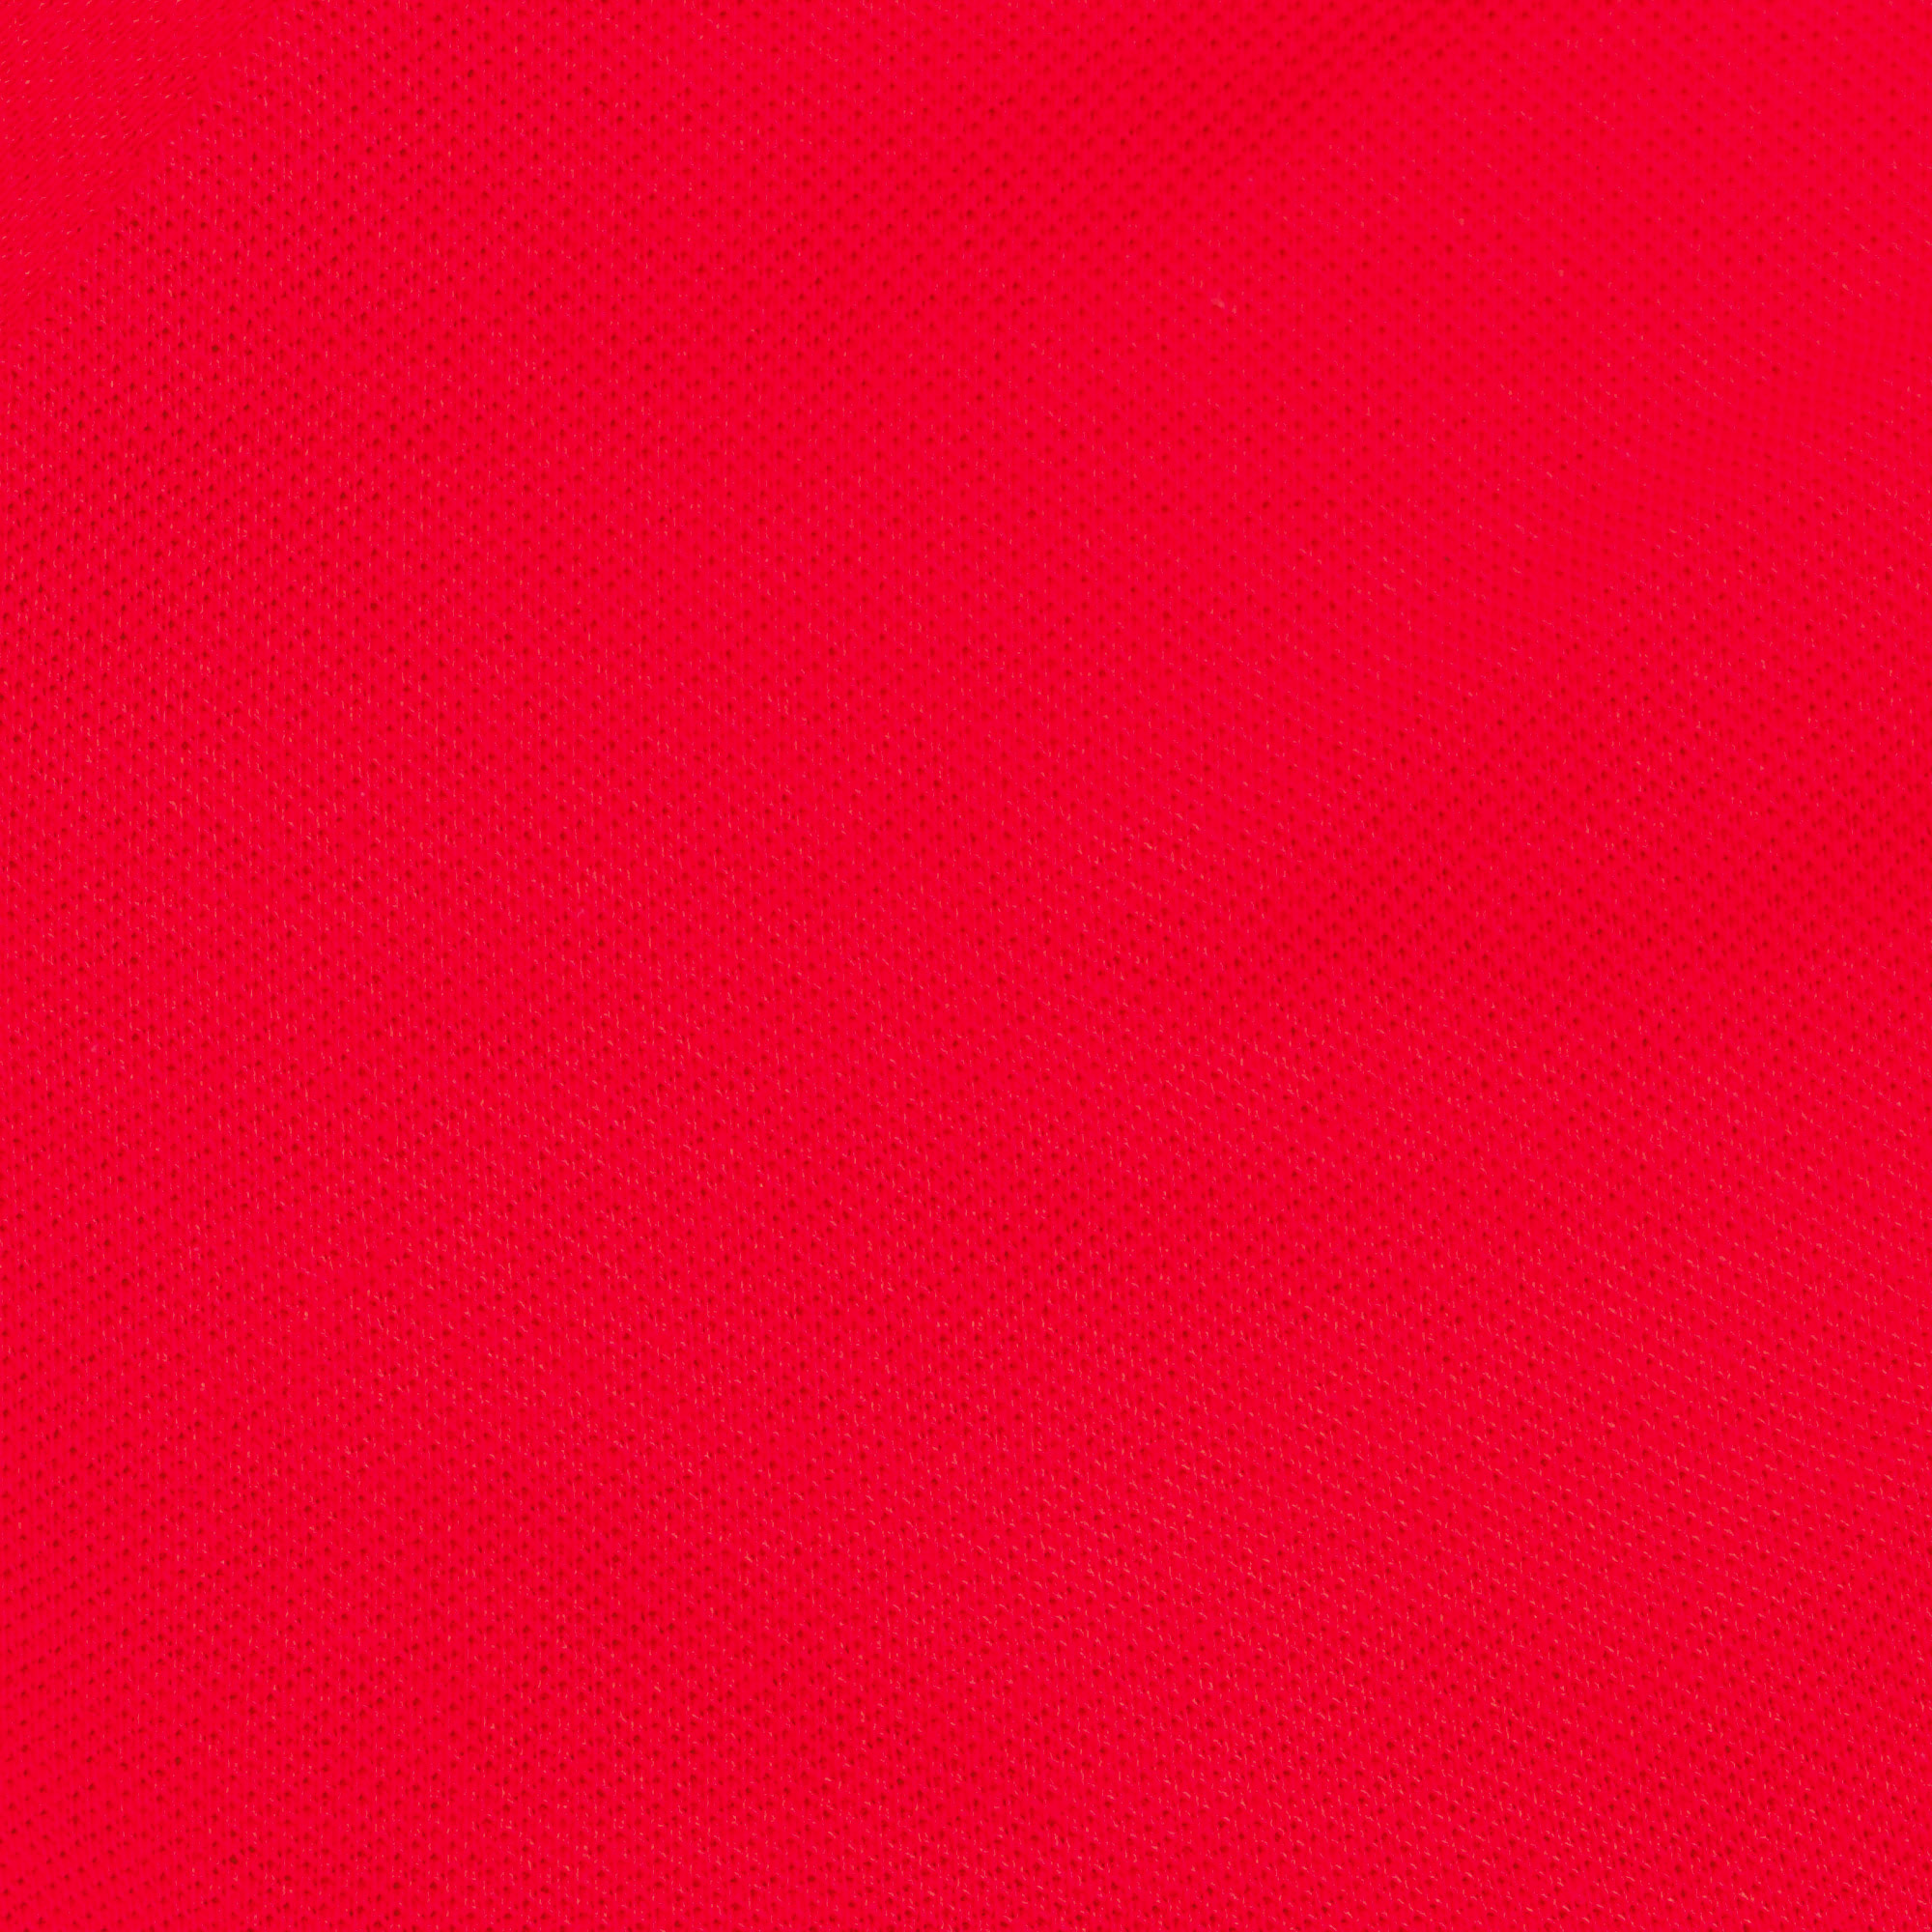 Футболка-поло AMADEY с коротким рукавом S красная, цвет красный, размер S - фото 3